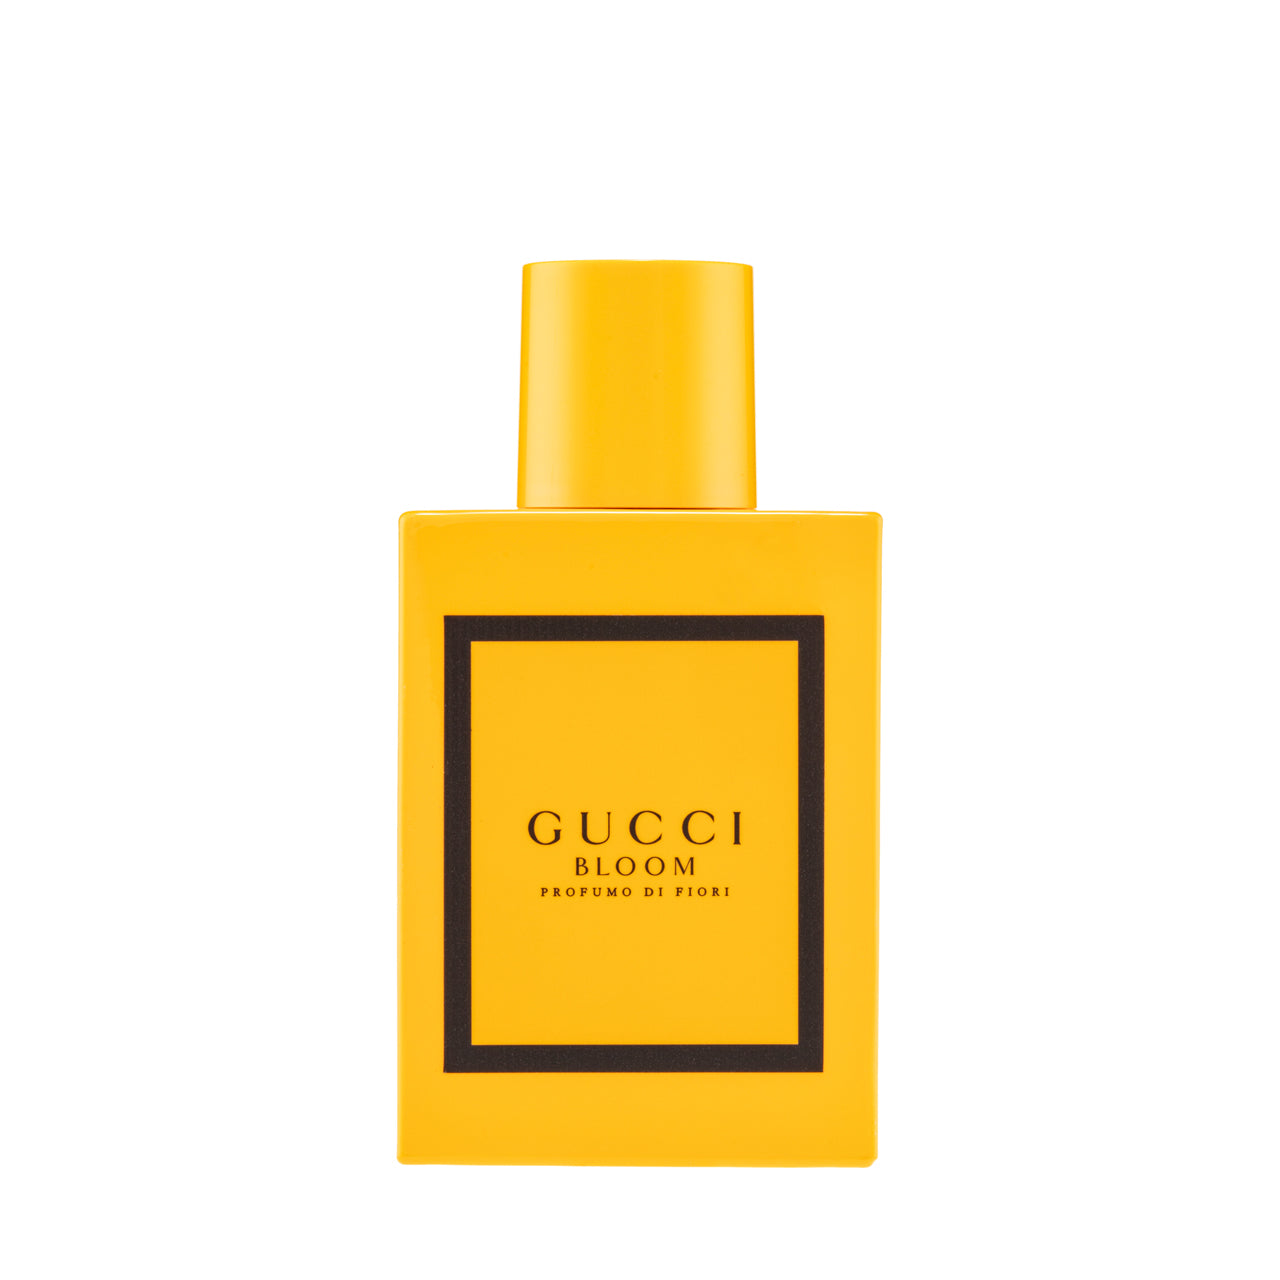 Gucci Bloom Profumo Di Fiori Eau De Parfum 50ml | Sasa Global eShop